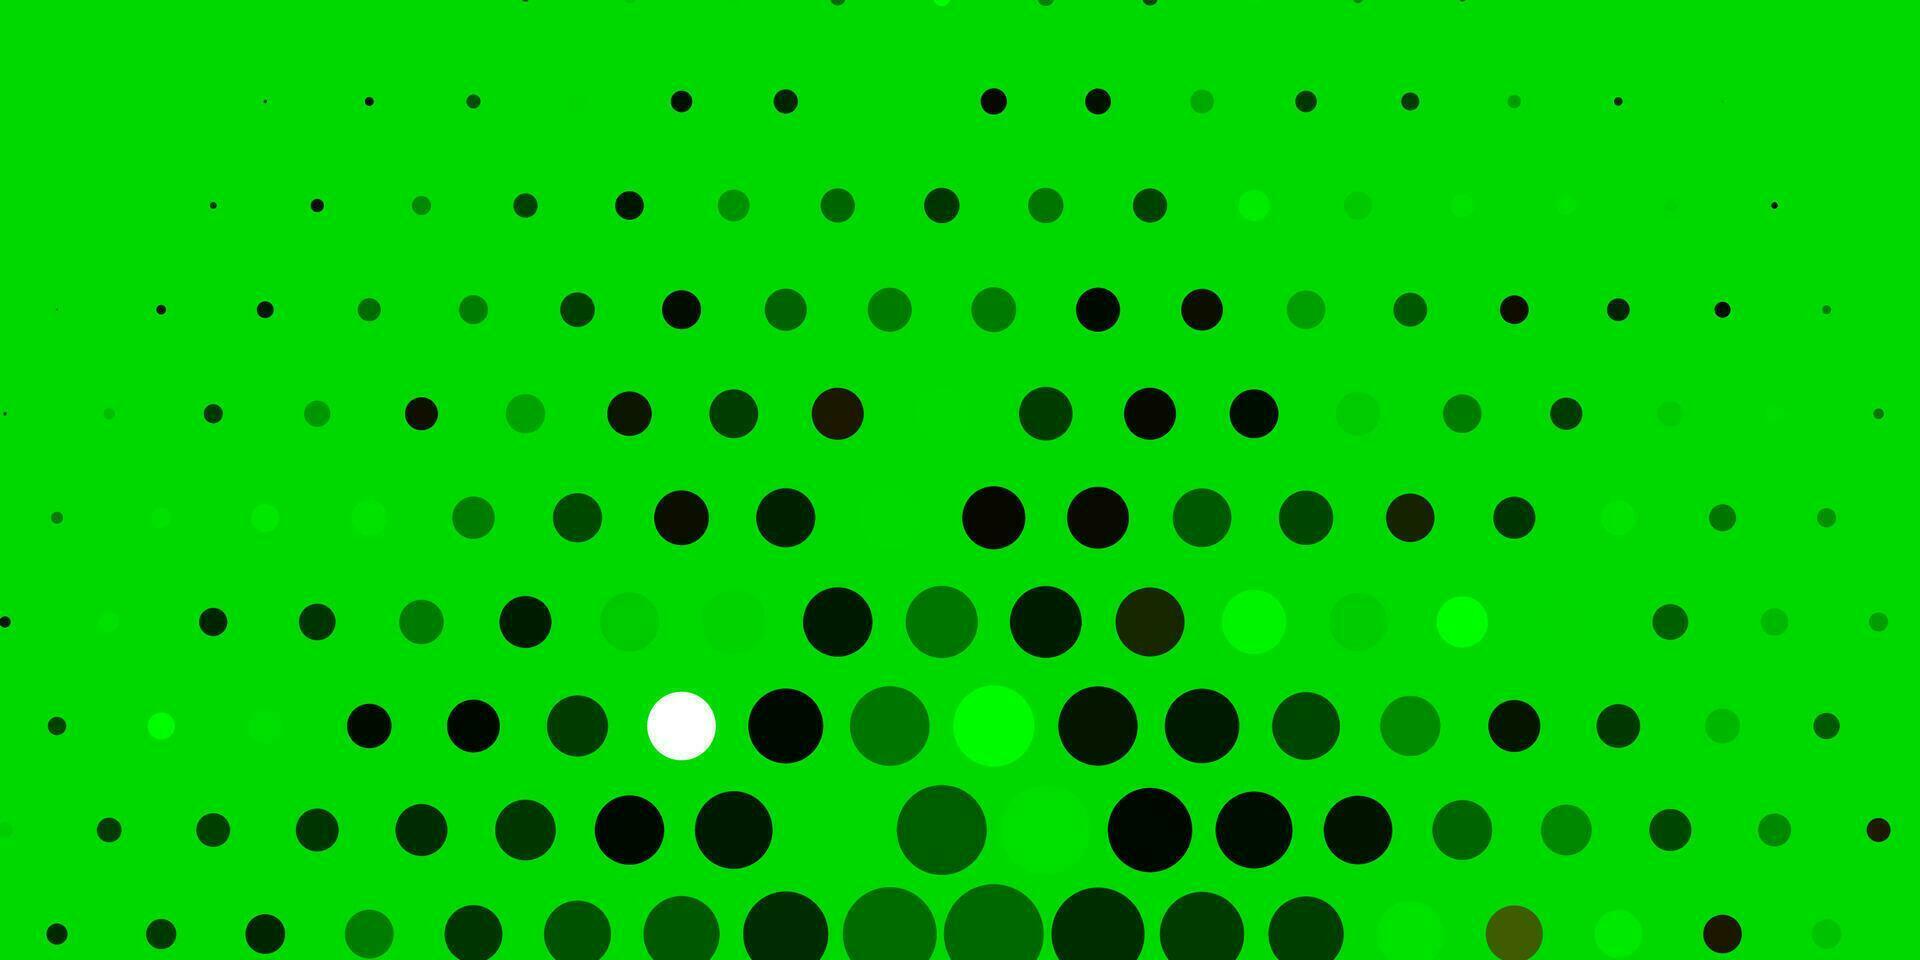 hellgrünes, gelbes Vektorlayout mit Kreisformen. vektor